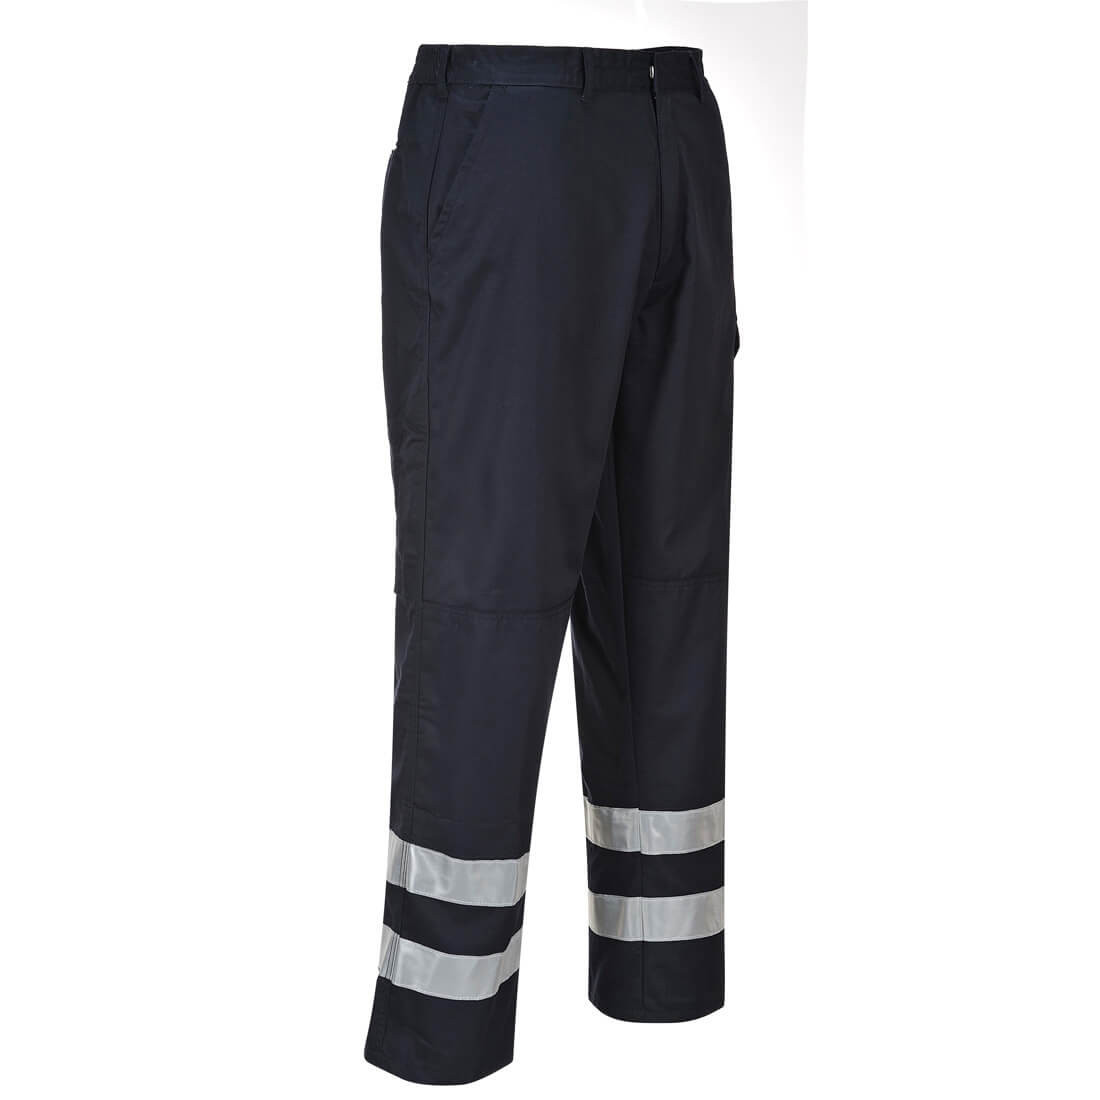 Pantalon Iona de sécurité - Les vêtements de protection